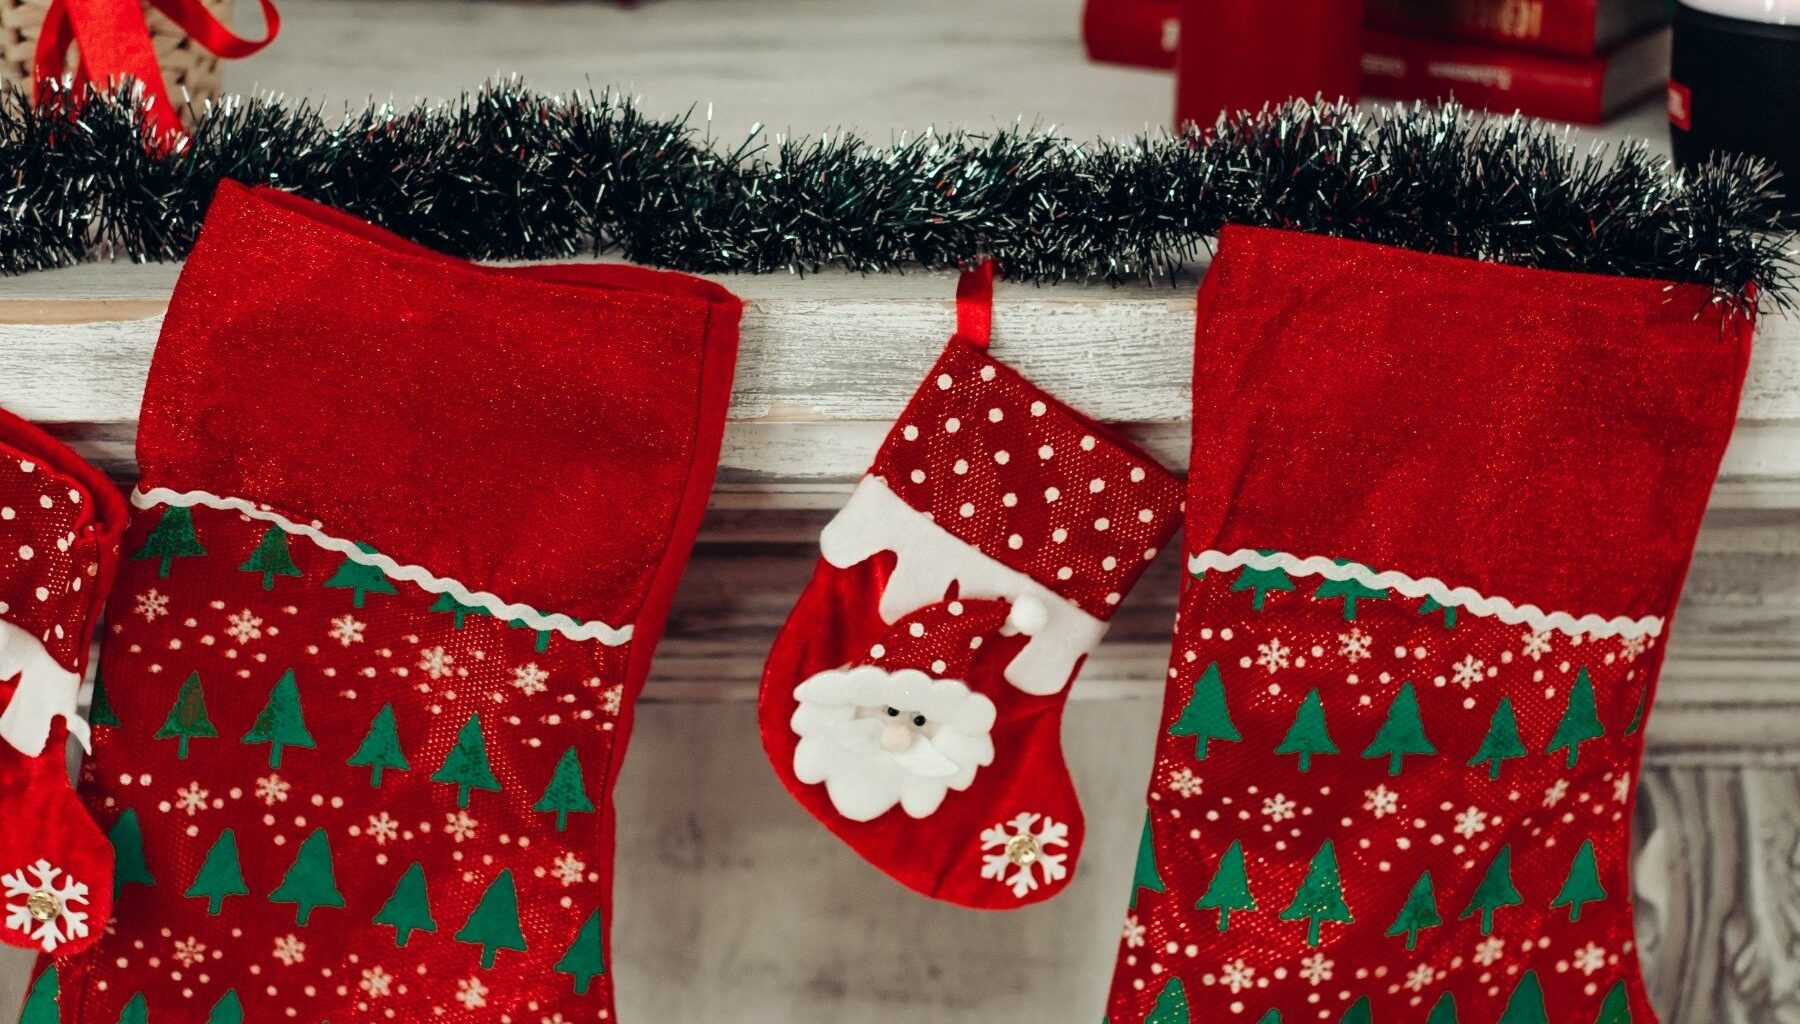 calcetines navidenos tradicion navidad origen significado